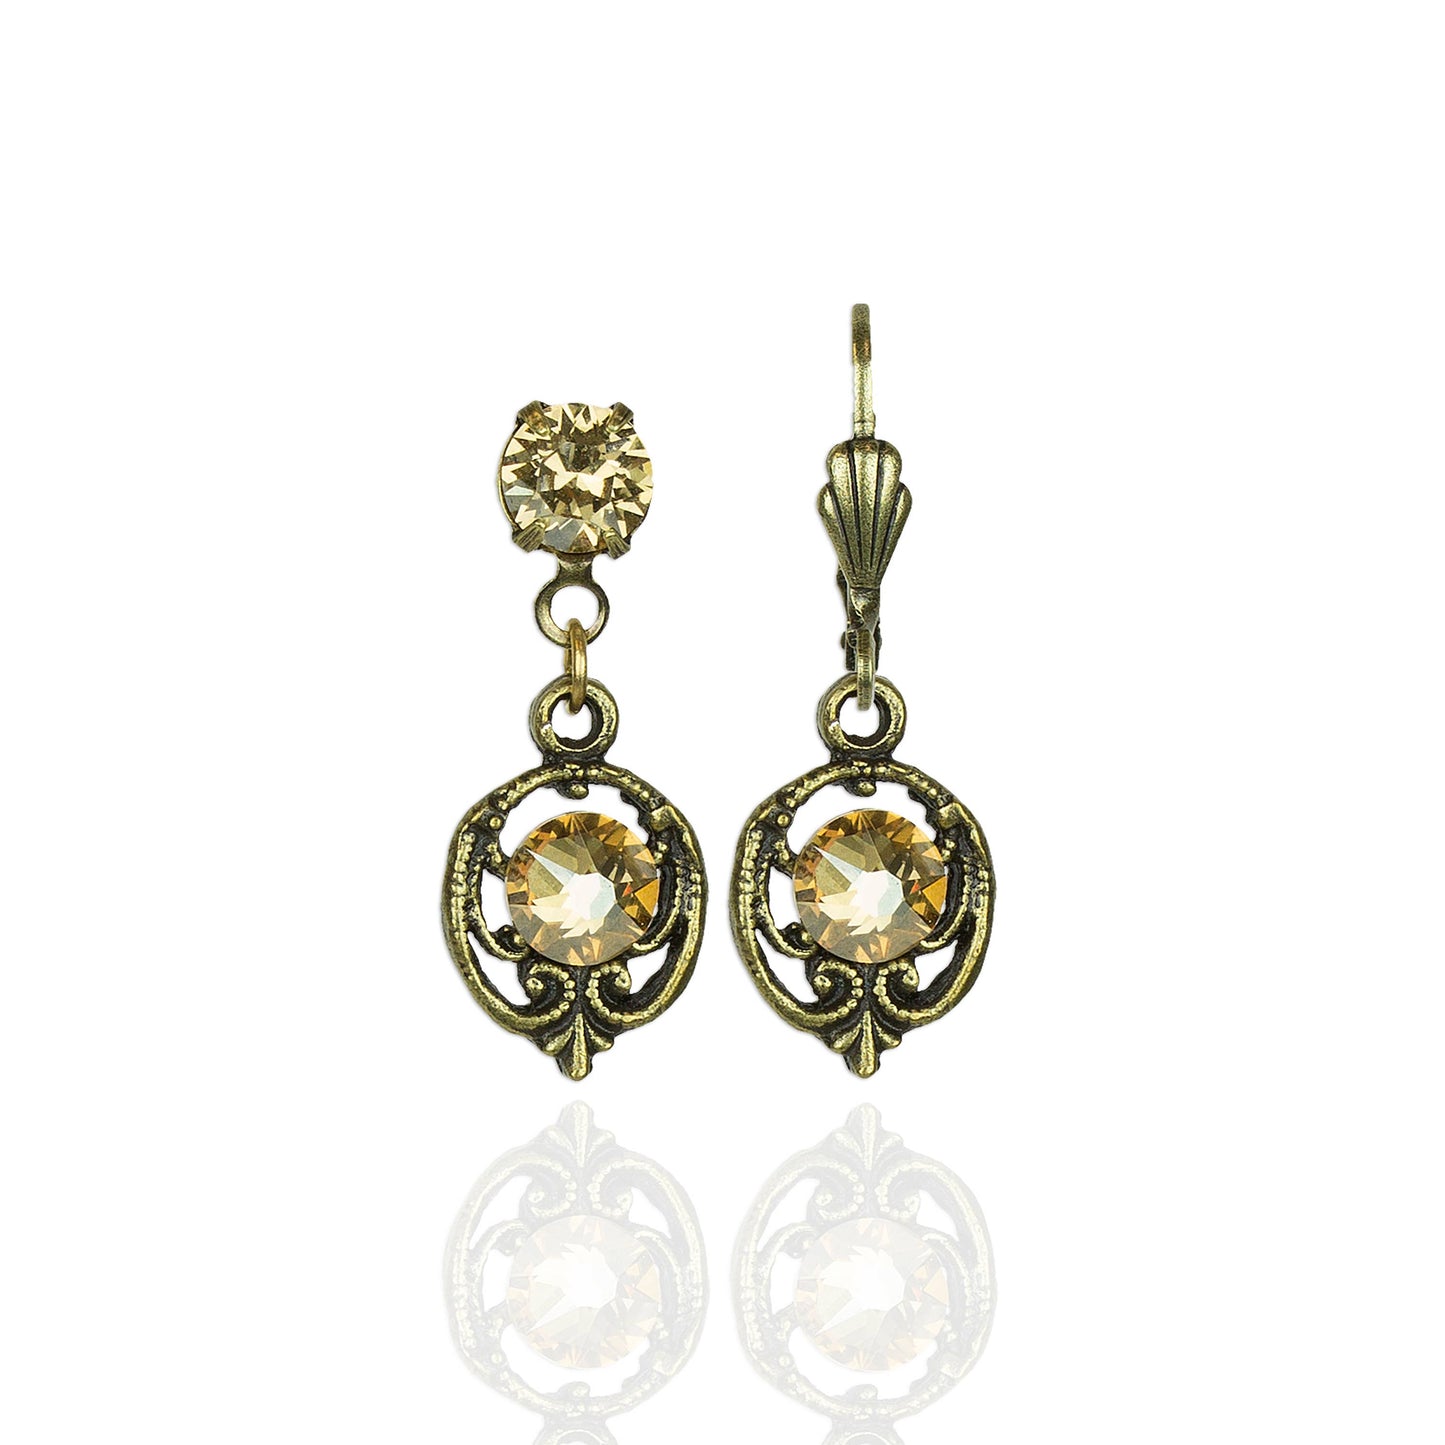 Madeline Crystal Earrings in Brass: Golden Shadow / Leverback